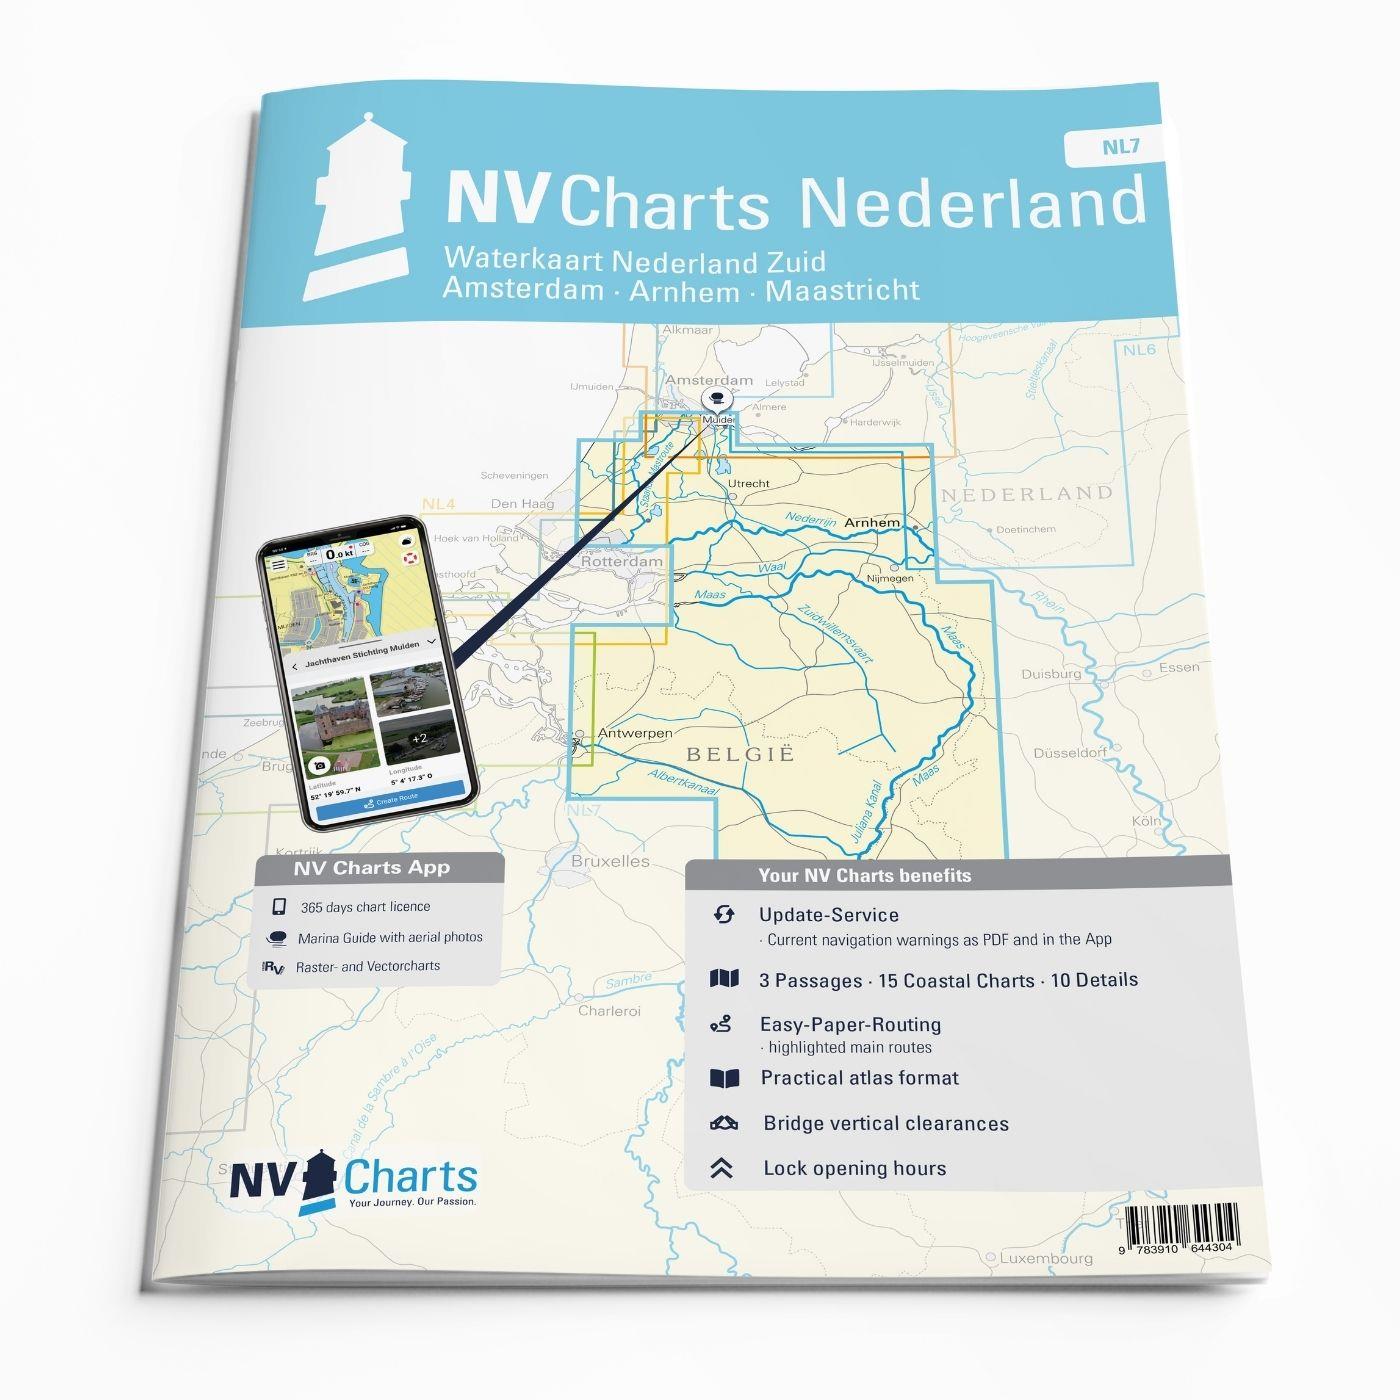 NV Charts Nederland NL7 - Waterkaart Nederland Zuid - Arnhem - Maastricht